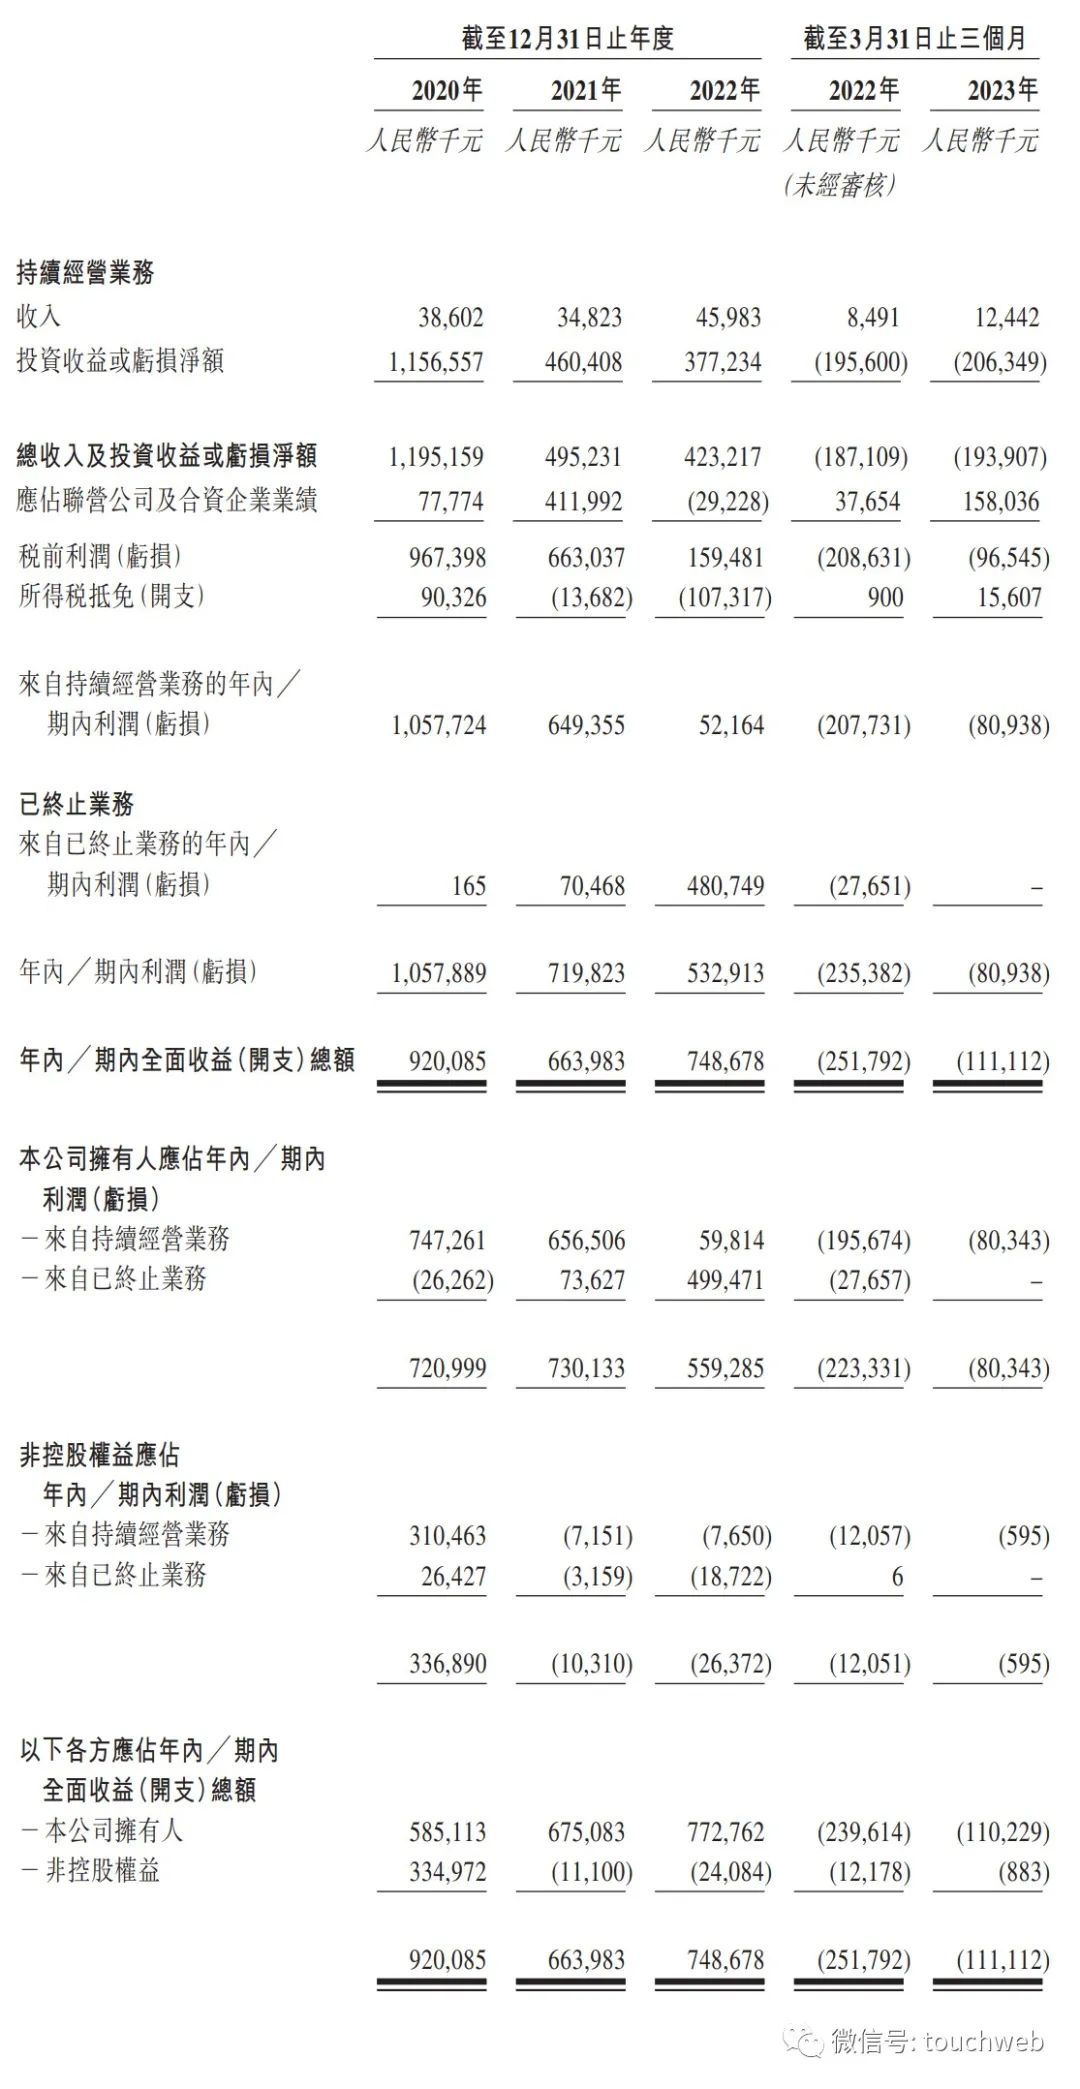 天图投资上市破发：市值34亿港元 投了小红书飞鹤八马茶业